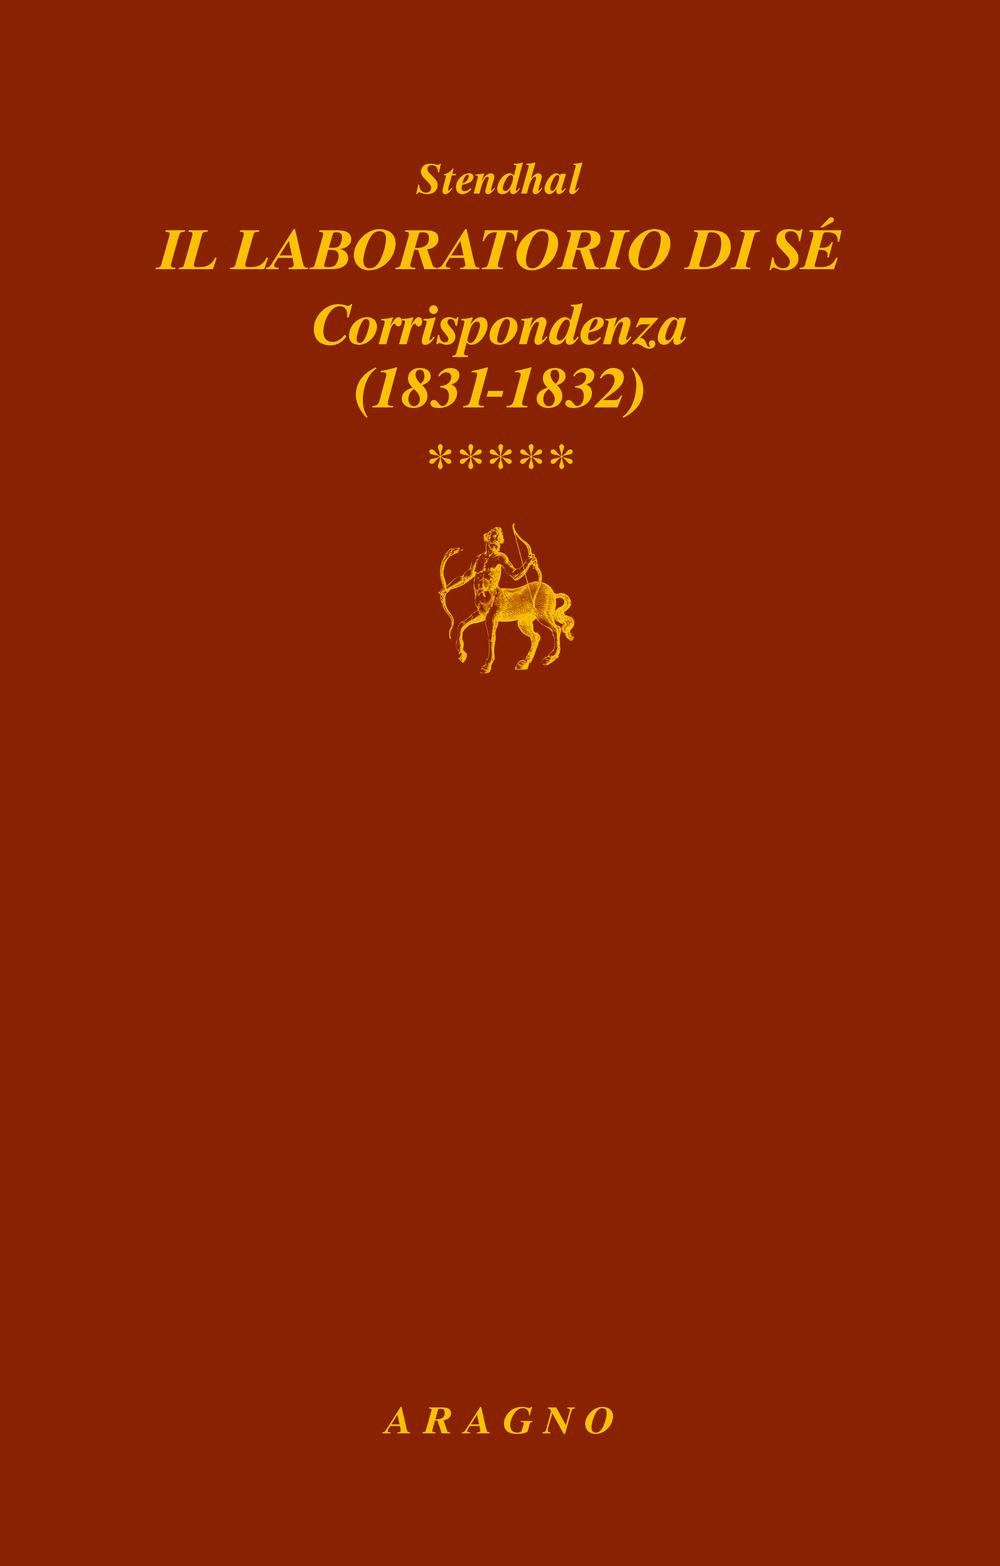 Il laboratorio di sé. Corrispondenza. Vol. 5: 1831-1832